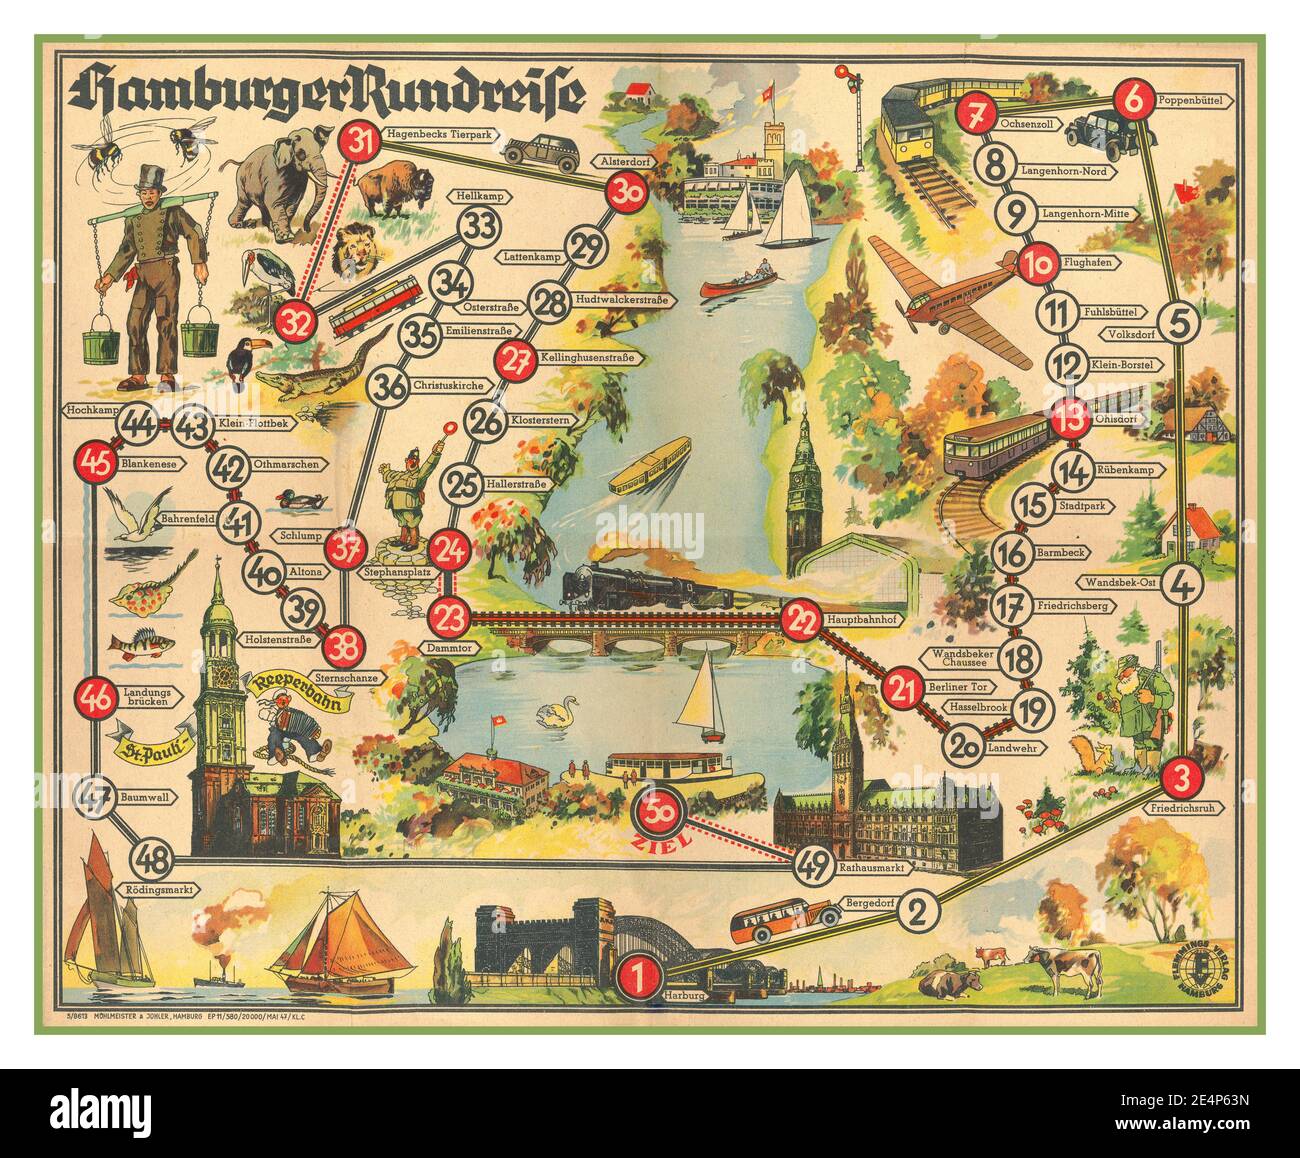 Dopo la guerra Germania 1947 mappa turistica pittorica di Amburgo, Germania, pubblicata nel 1947. Amburgo era stata gravemente danneggiata dai bombardamenti alleati durante la guerra e gran parte della città non è stata ricostruita per decenni. Molti dei 50 "siti" turistici identificati su questa mappa sono semplicemente fermate ferroviarie e strade; per quanto riguarda gli altri, non è chiaro esattamente cosa si poteva vedere e visitare nel 1947. Uno dei siti più importanti, con l'immagine di un marinaio festoso, è St. Pauli - Reeperbahn, il famoso quartiere a luci rosse di Amburgo. Poster pubblicato nel periodo poco dopo la seconda guerra mondiale come parte degli sforzi per ricostruire il turismo. Foto Stock